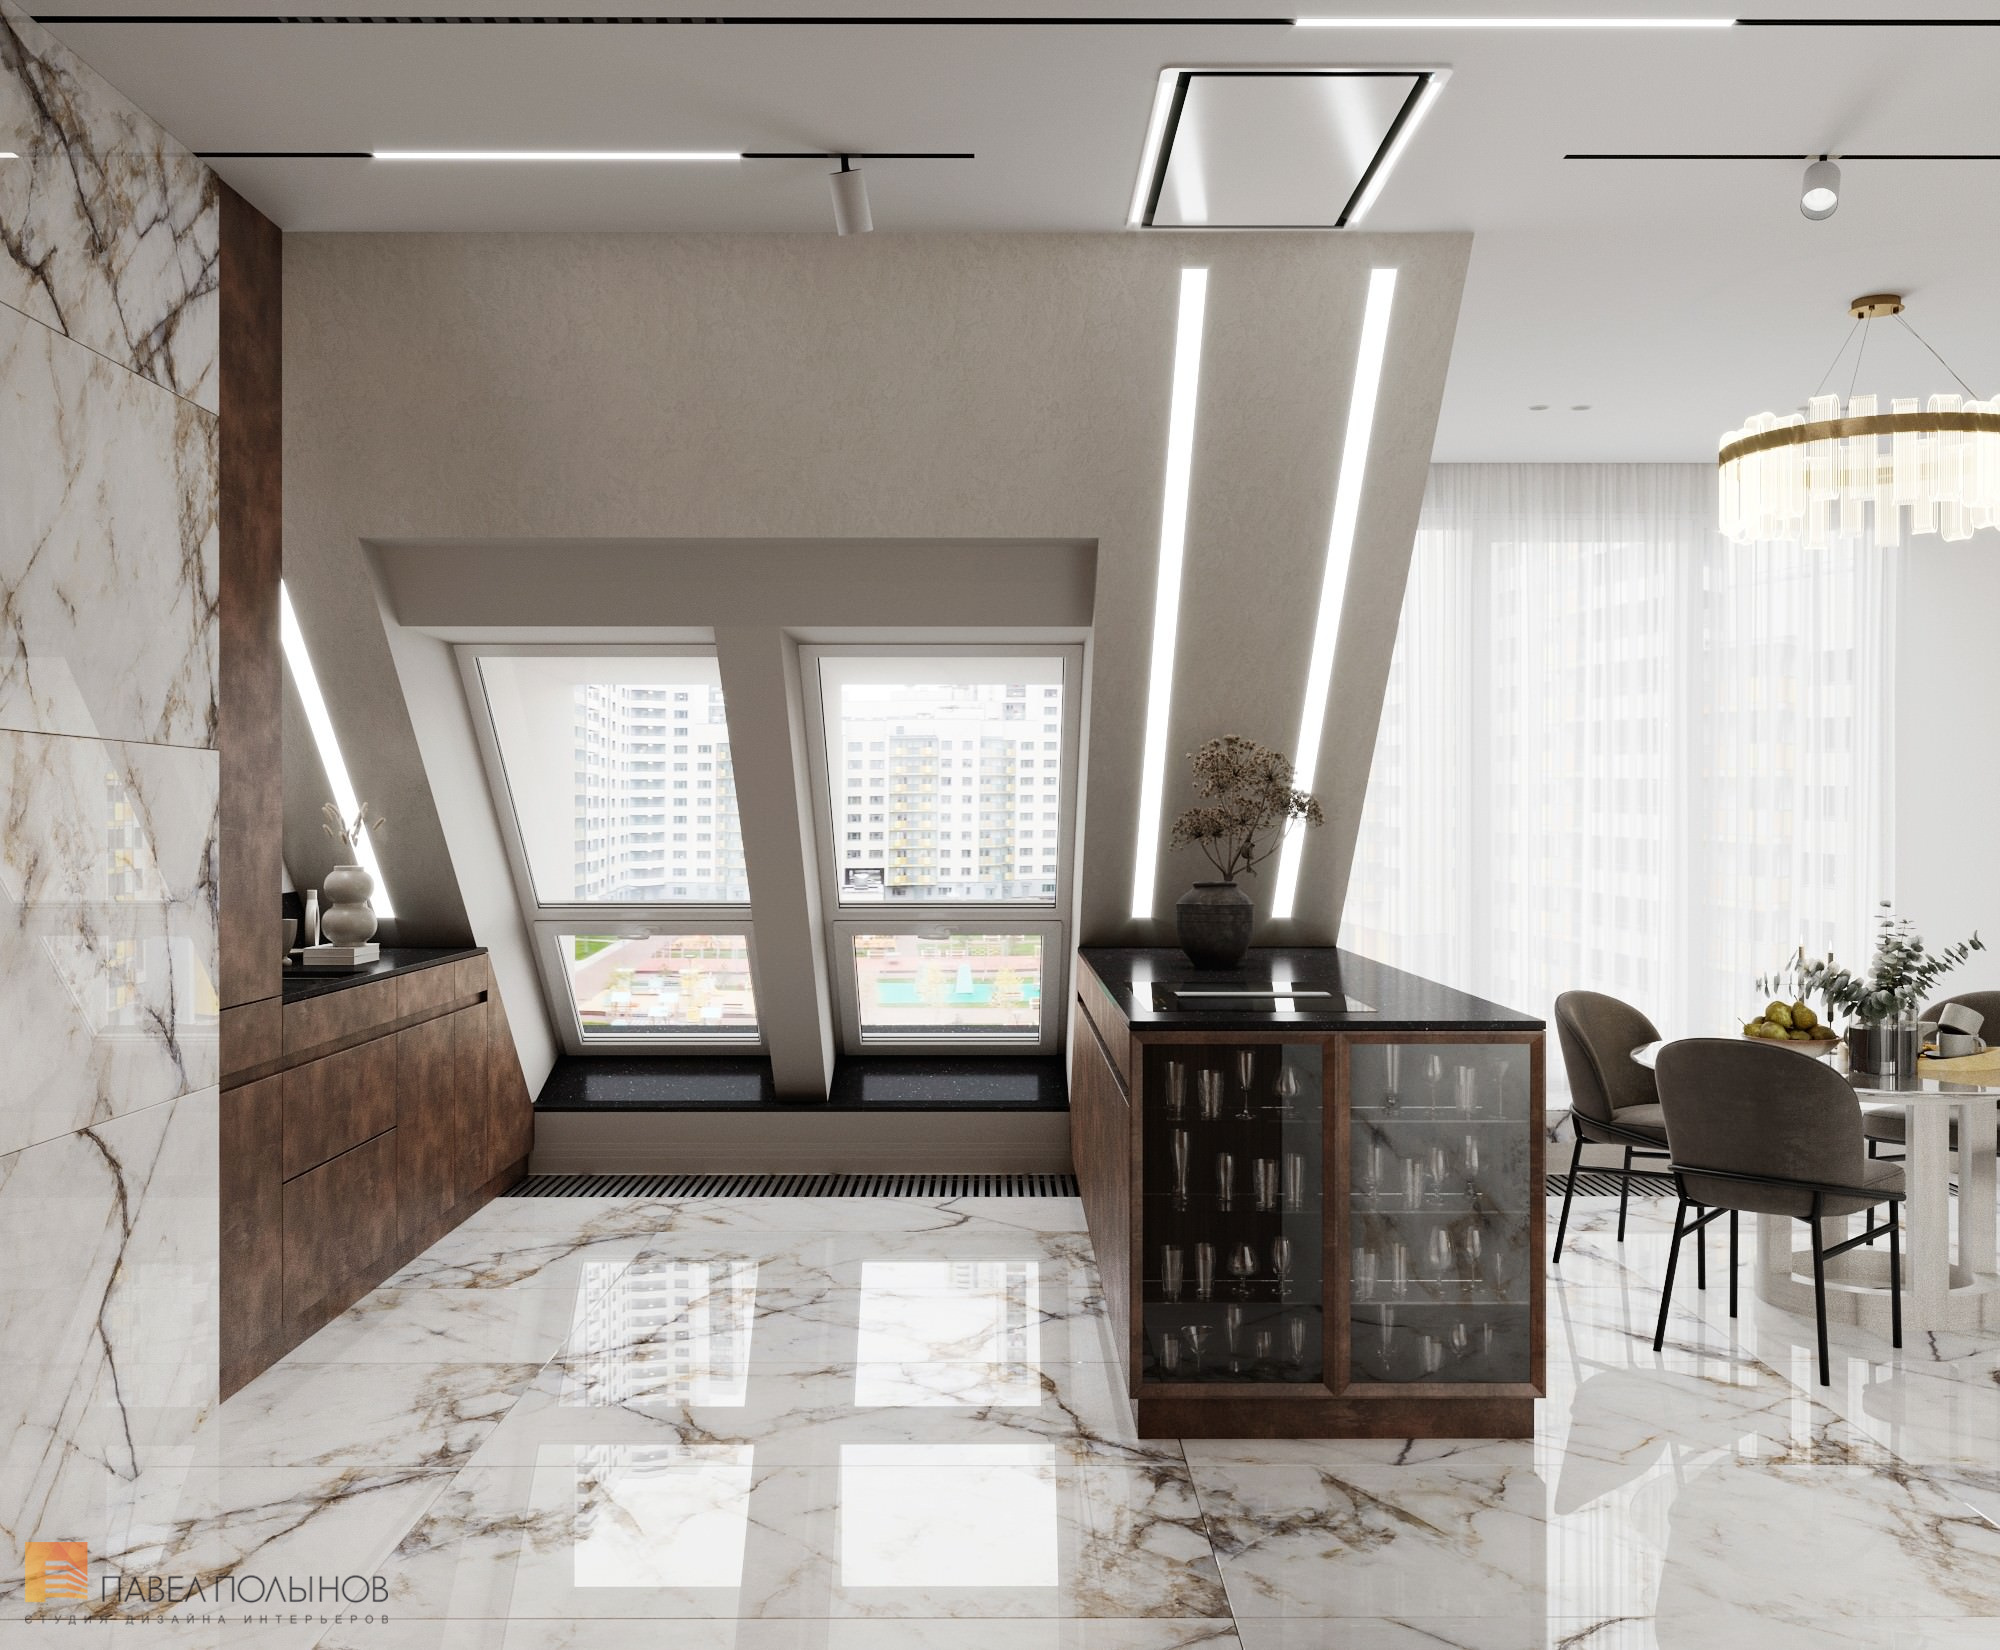 Фото дизайн кухни из проекта «Интерьер квартиры в современном стиле, 178 кв.м.»